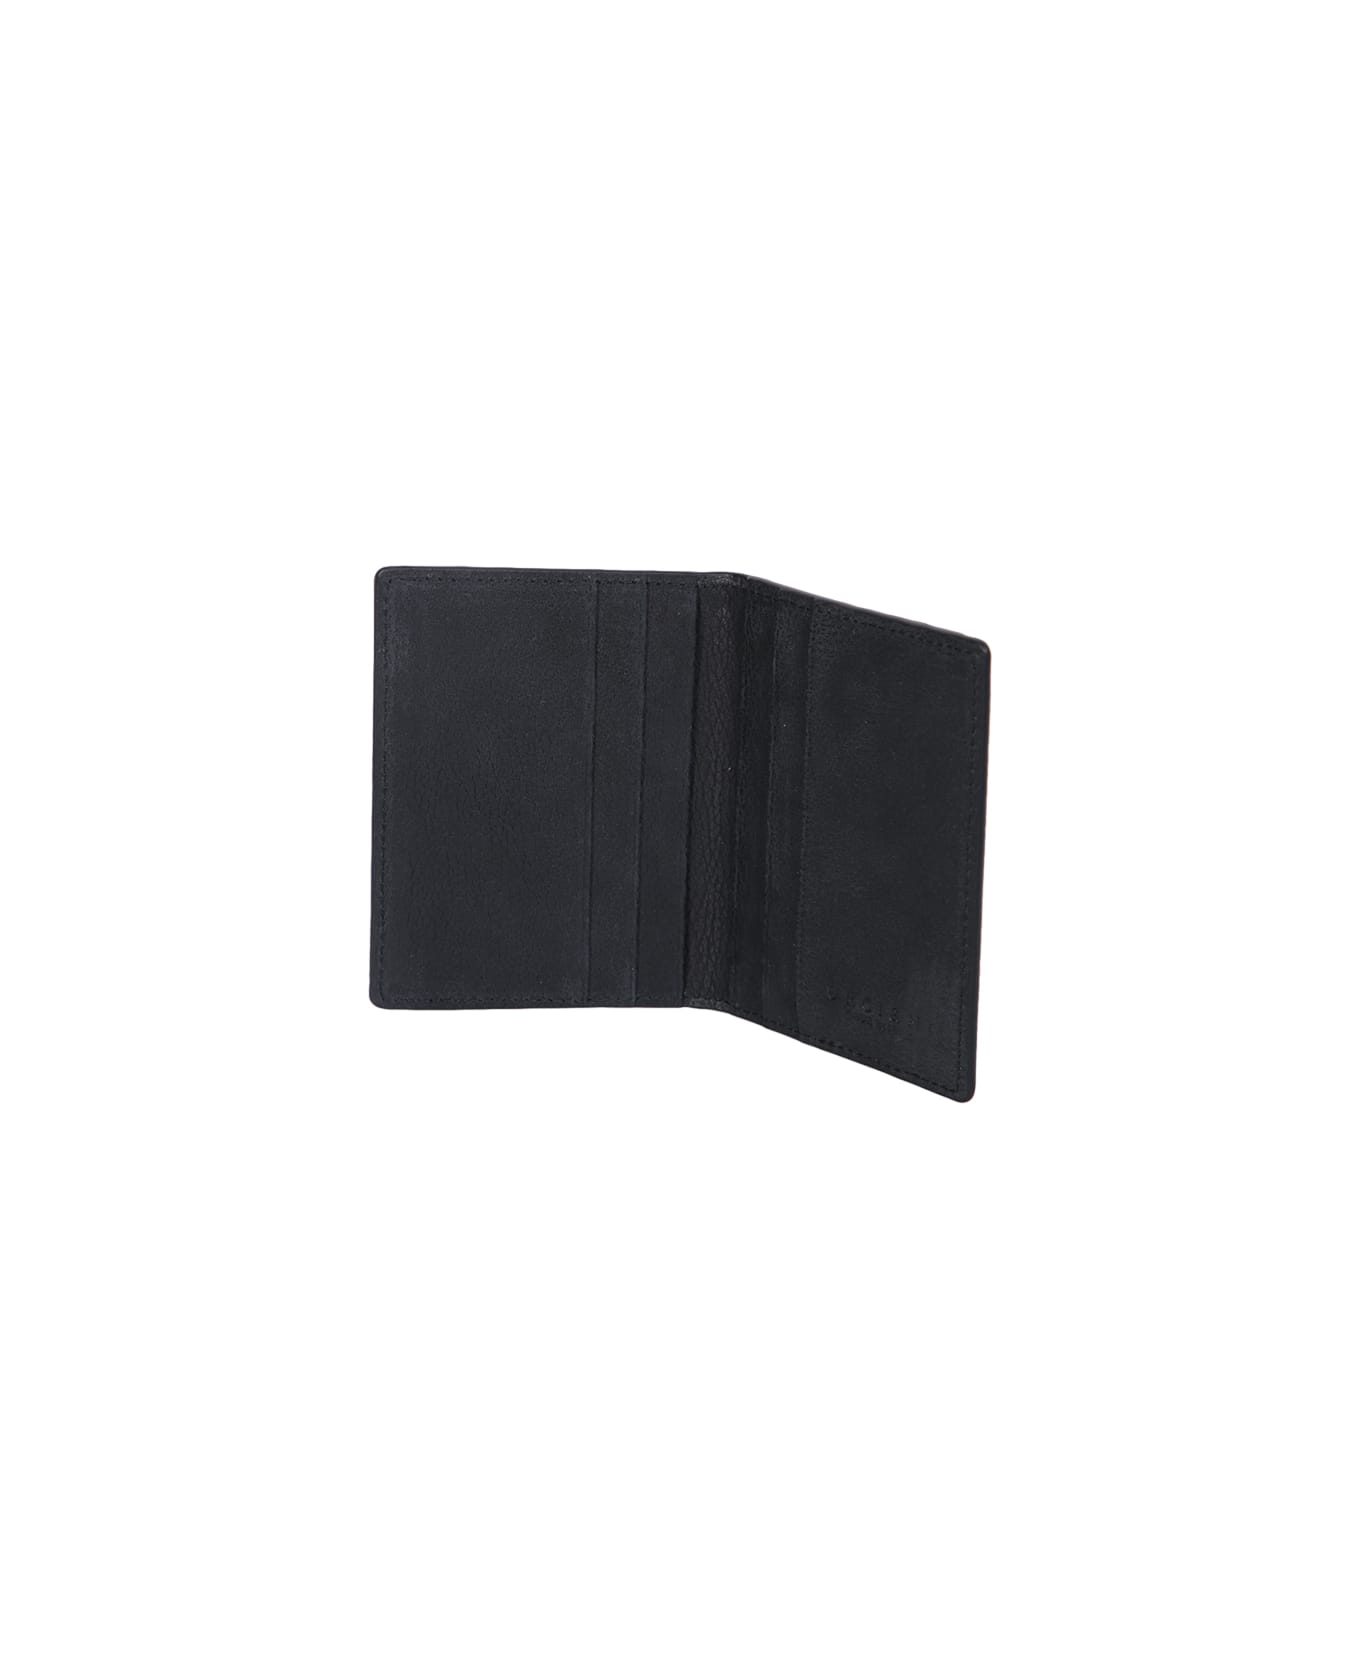 Orciani Chevrette Card Holder Black - Black